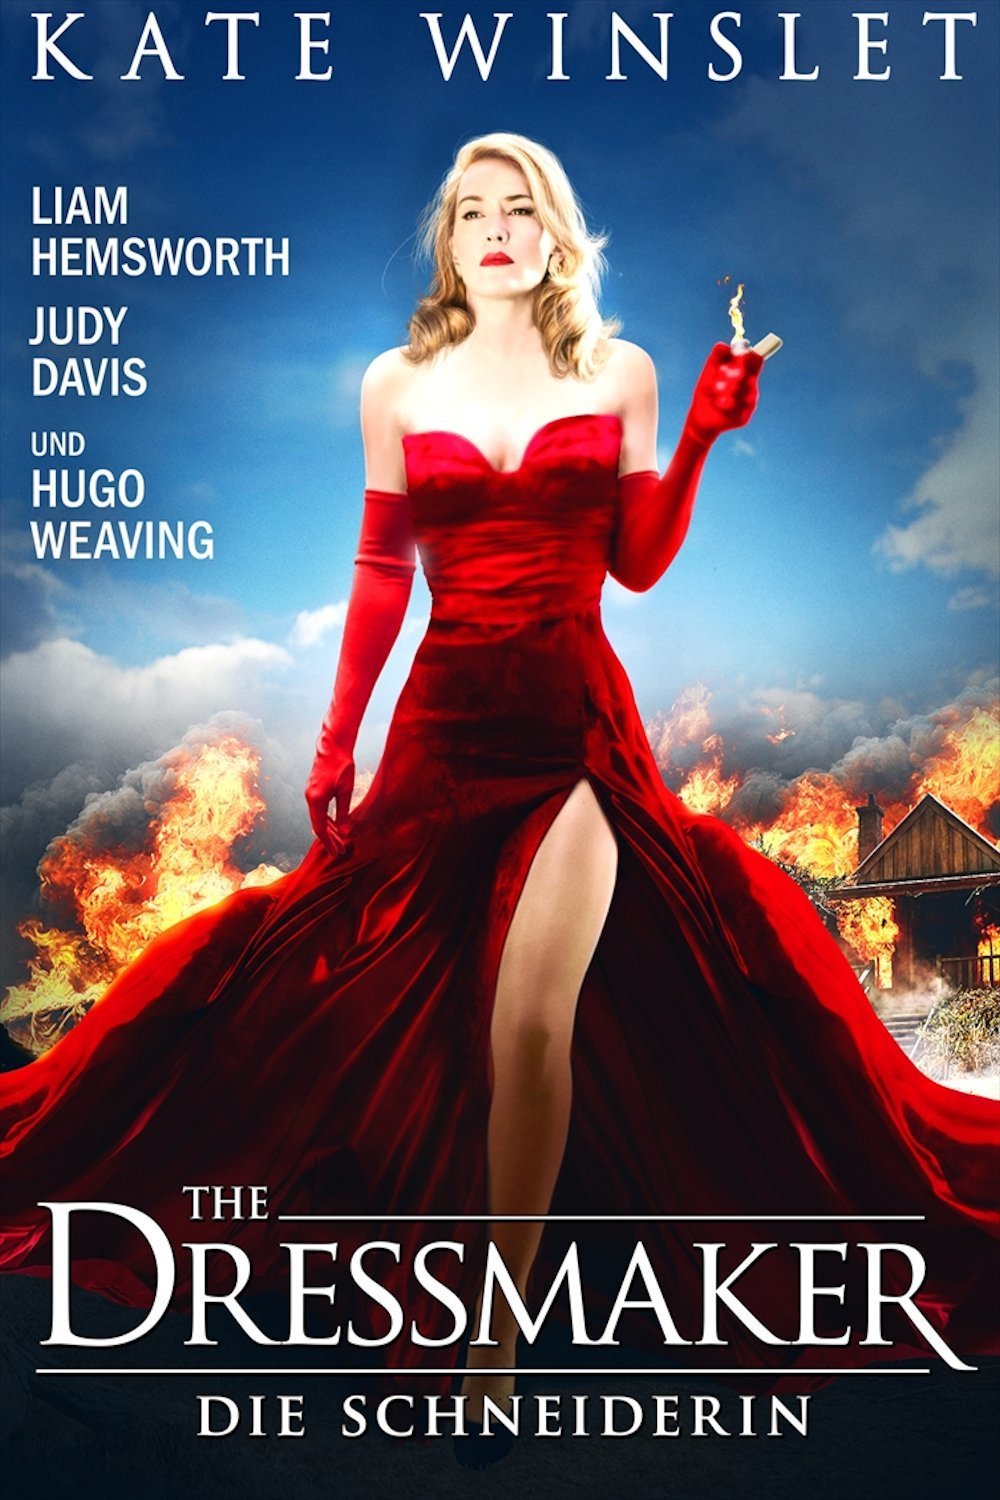 Plakat von "The Dressmaker"